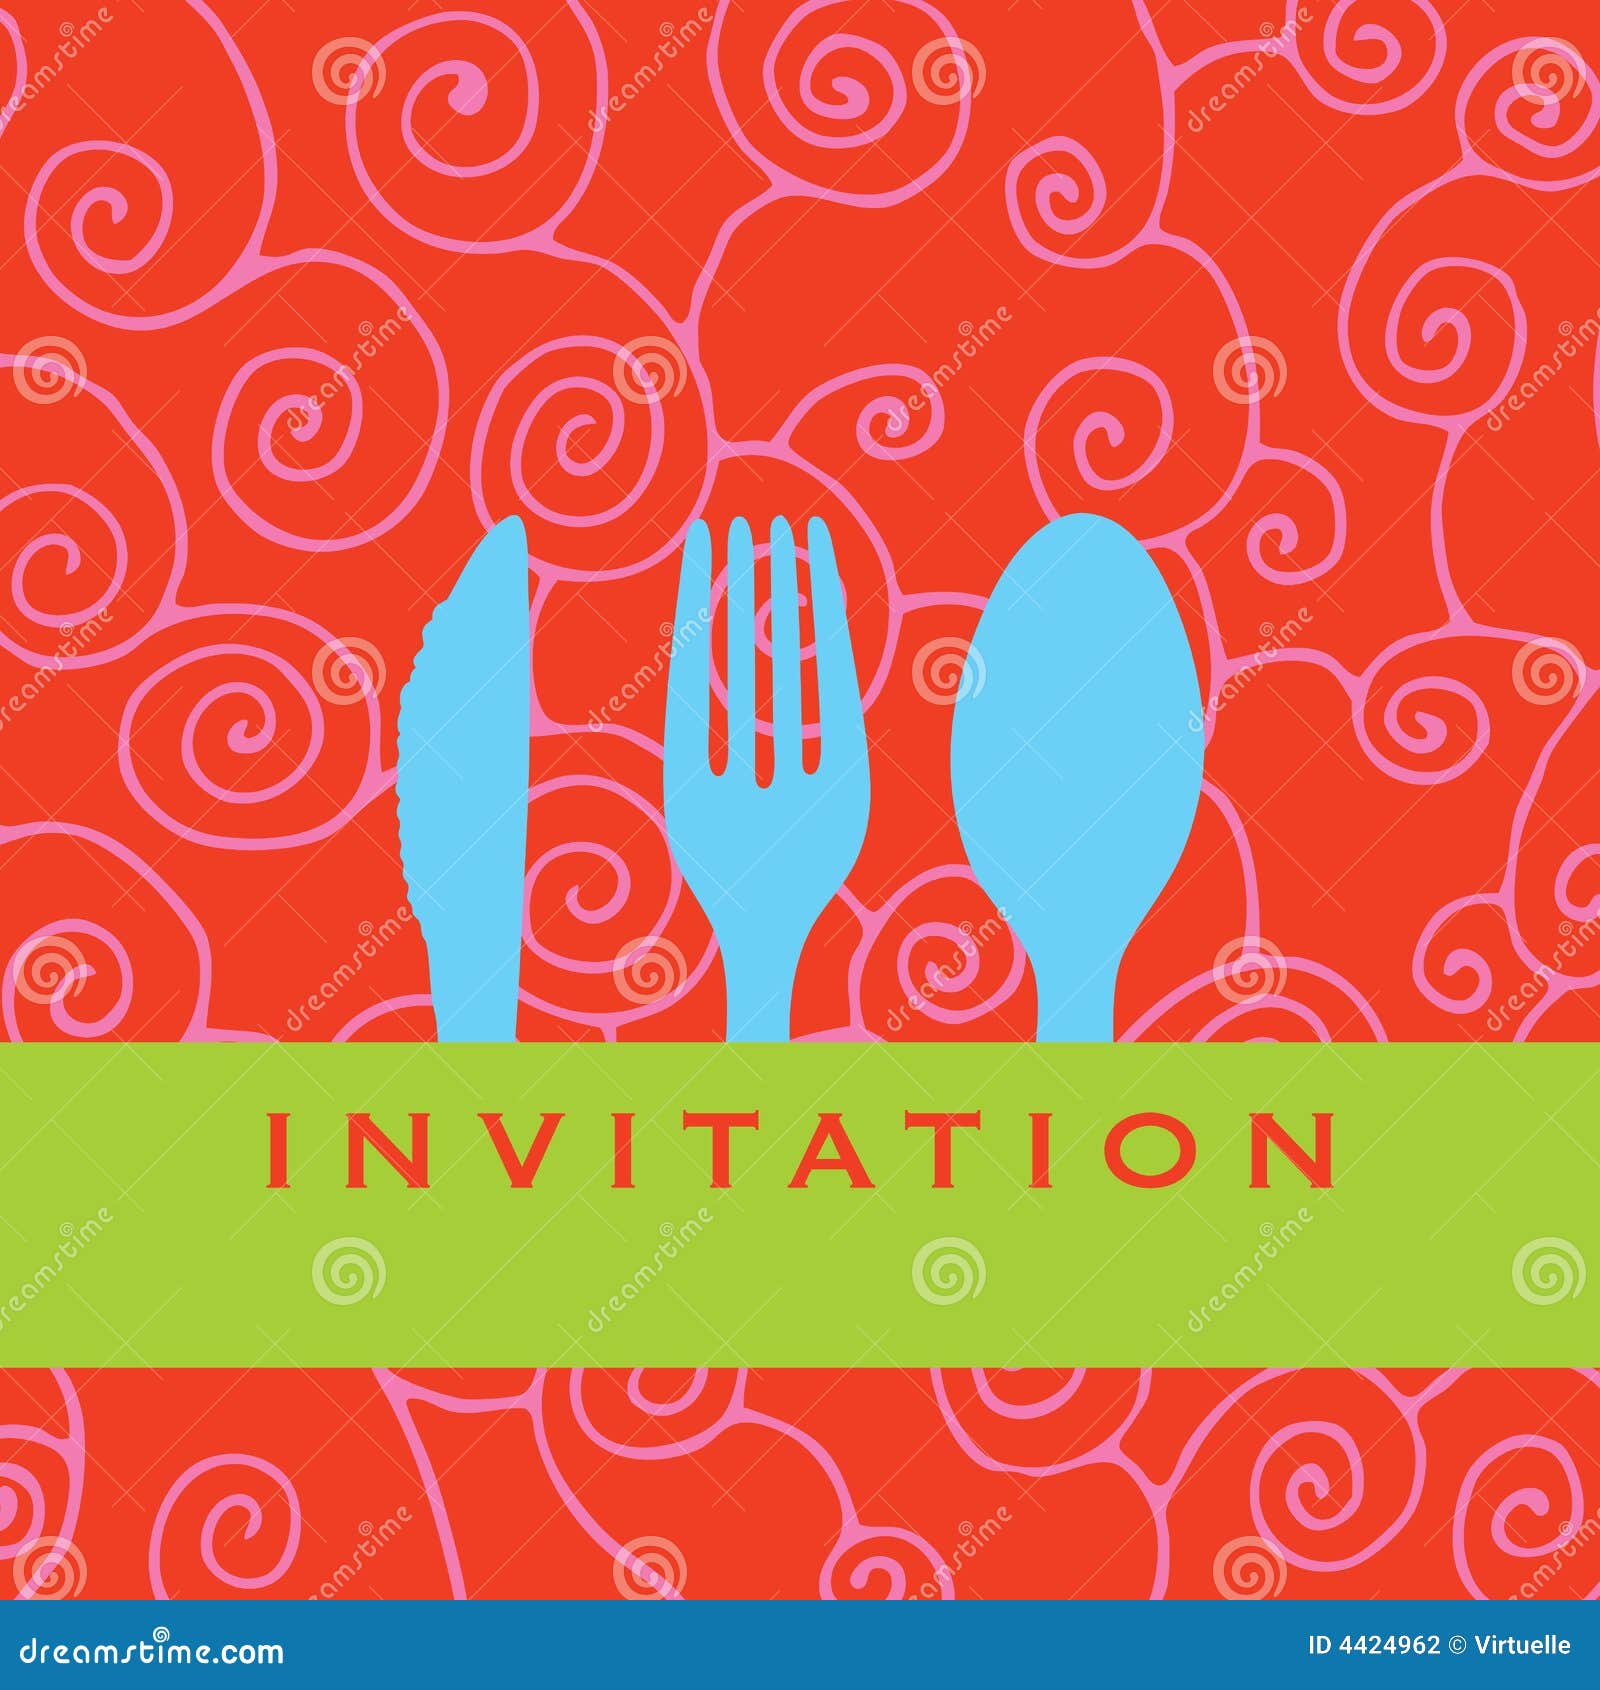 clipart luncheon invitation - photo #1